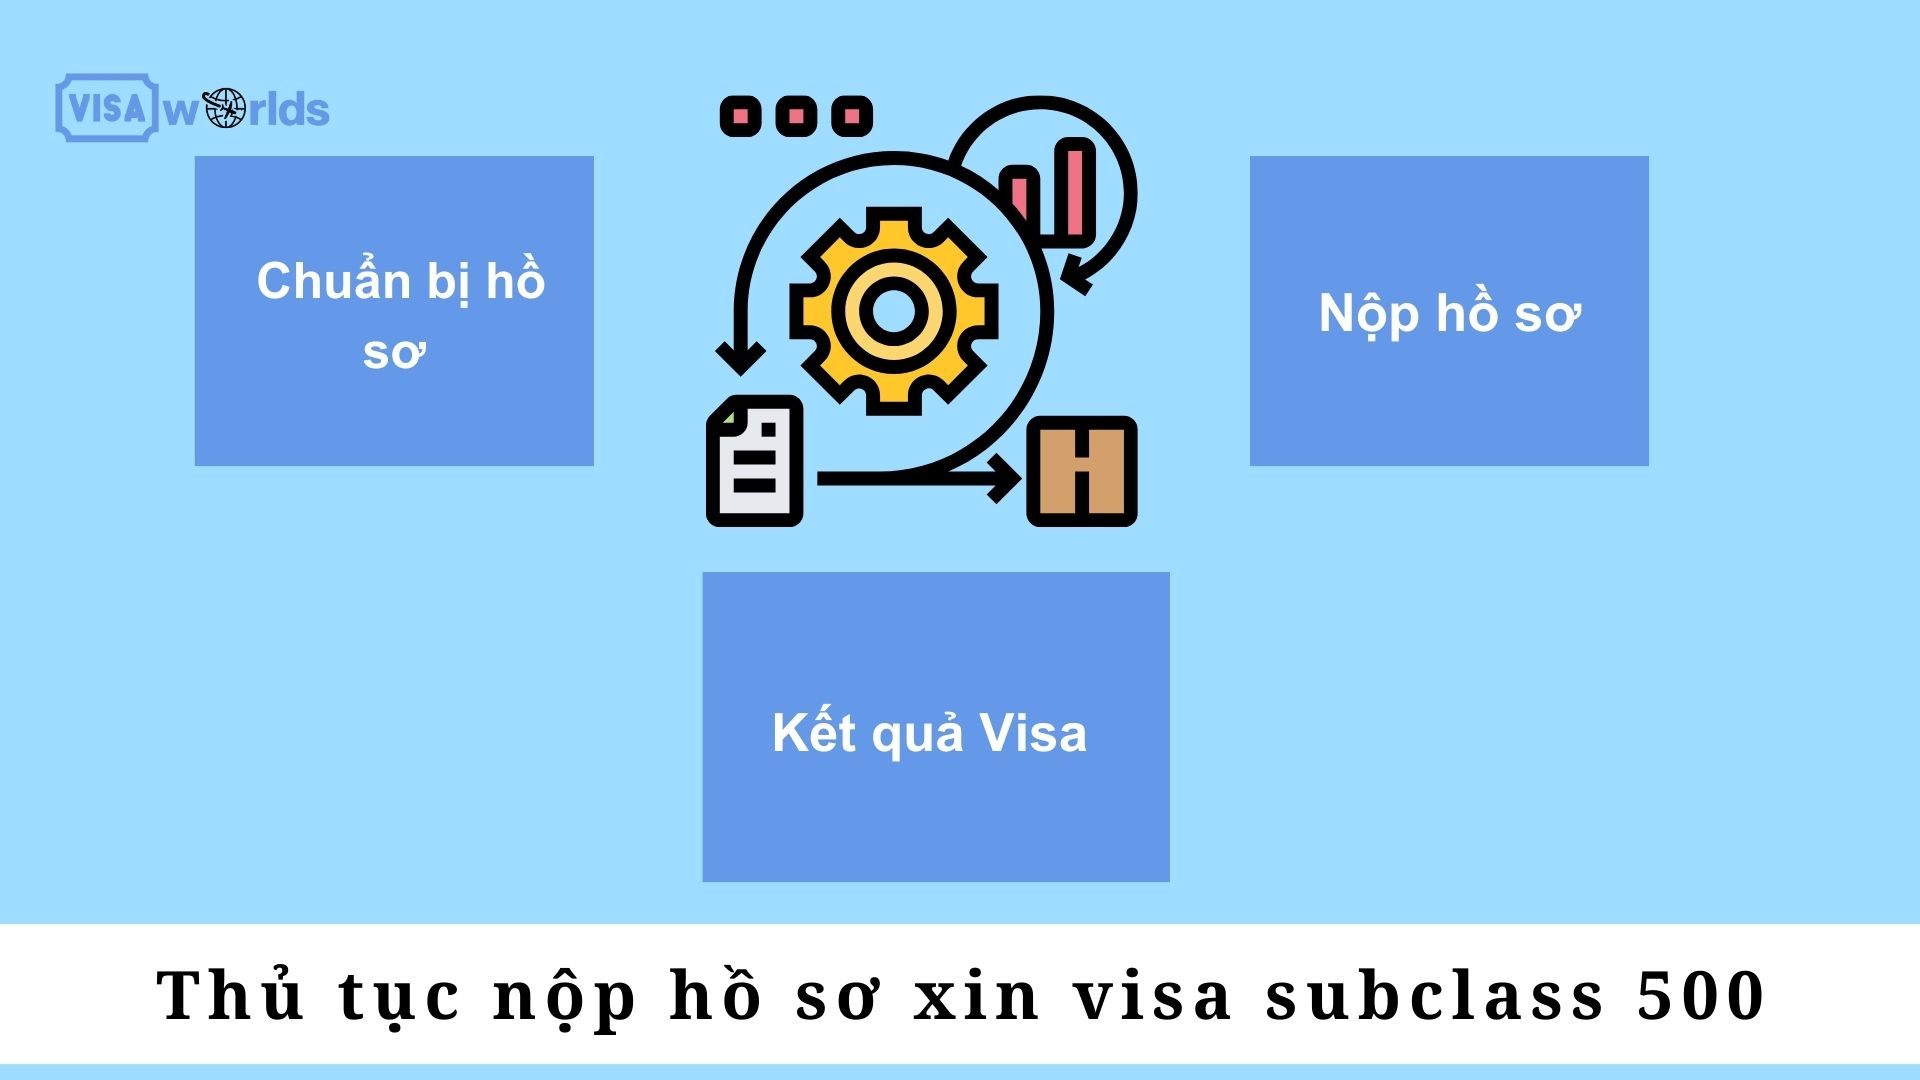 Thủ tục nộp hồ sơ xin visa subclass 500